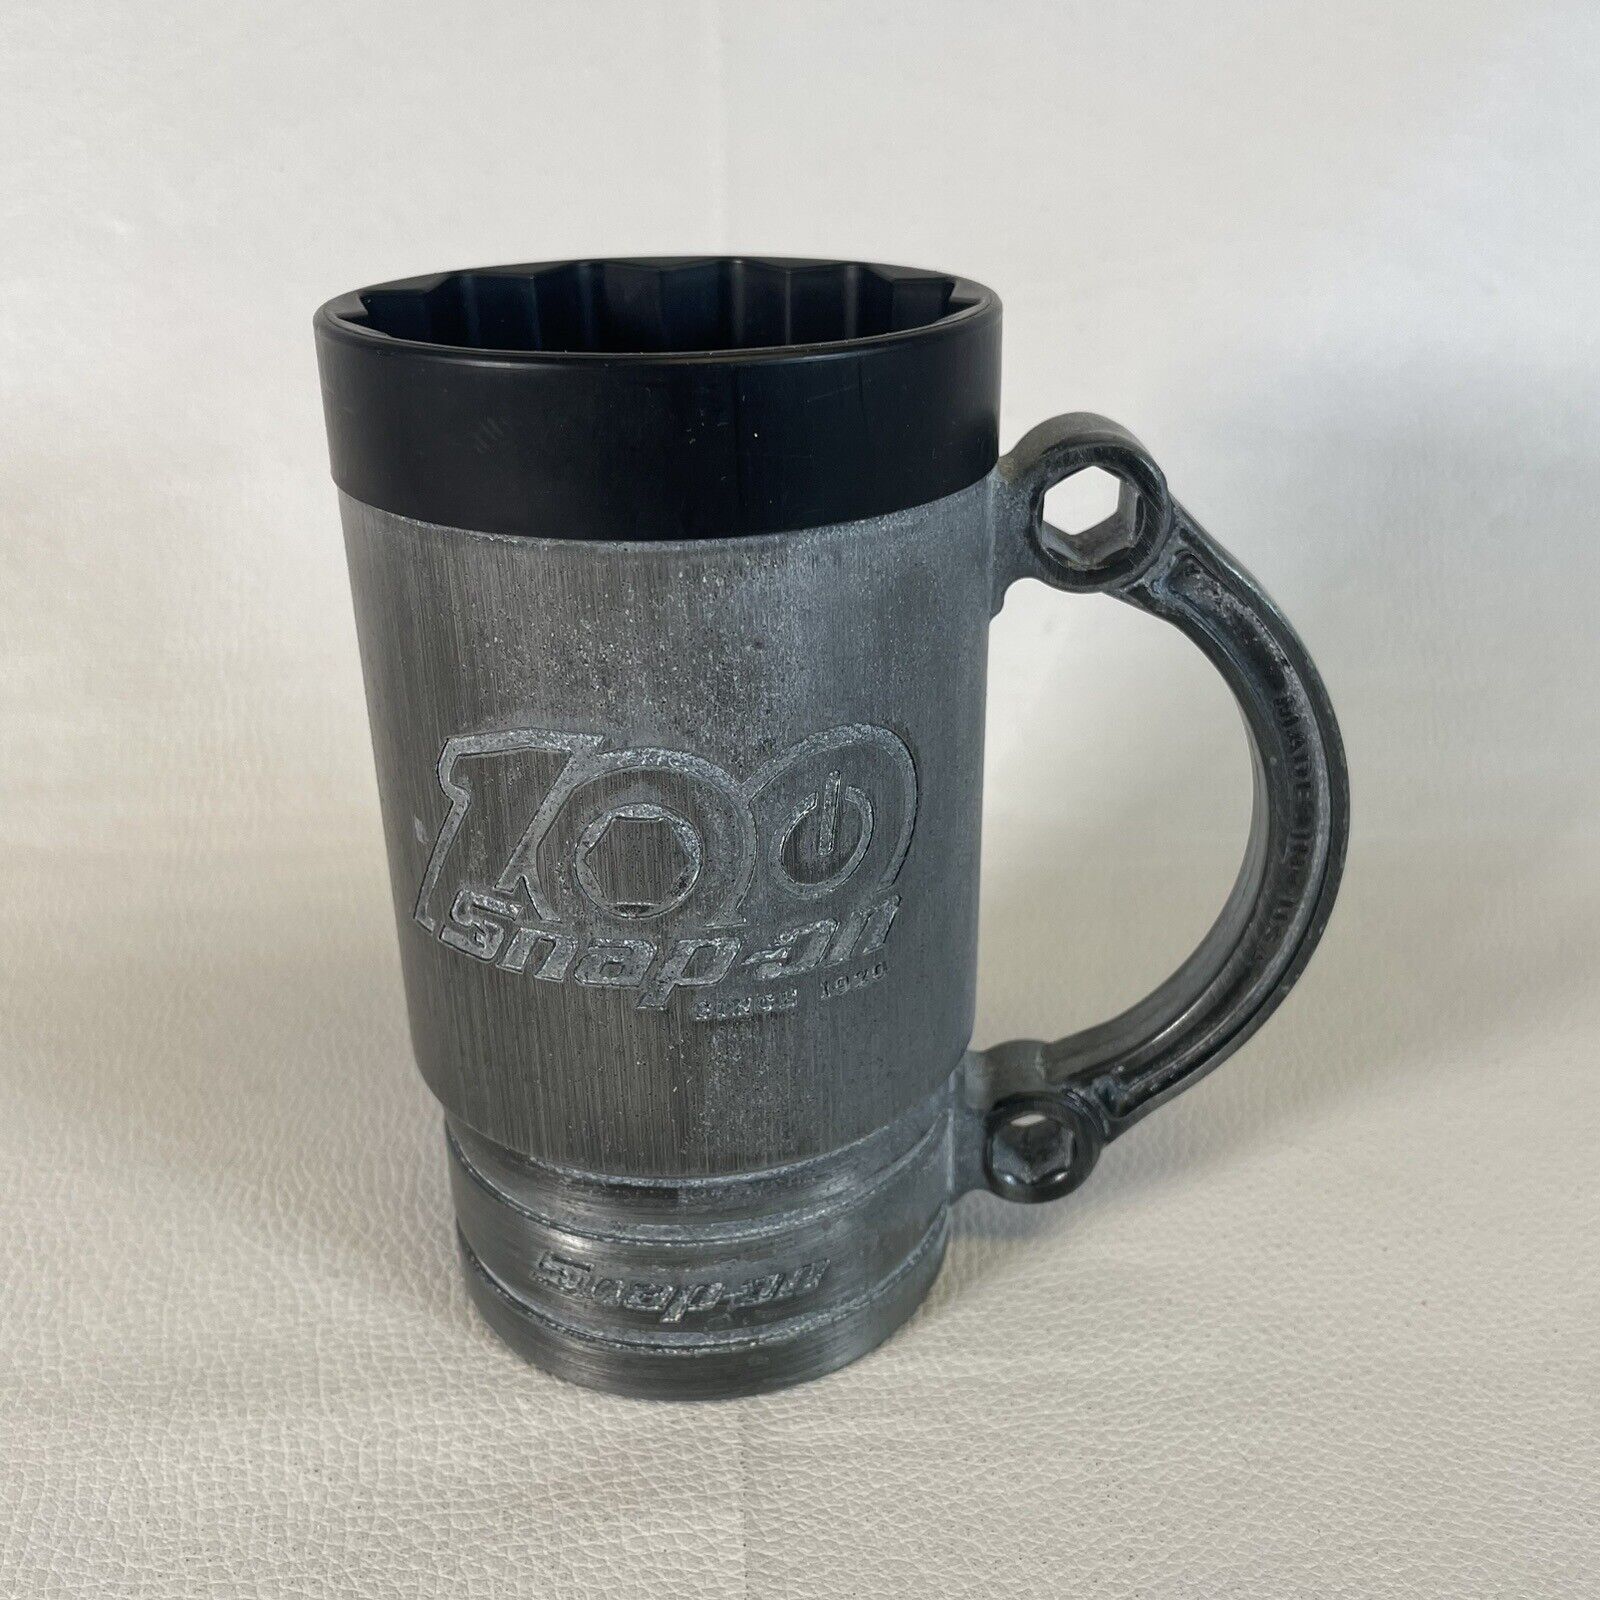 One Snap-On Beer Stein BEER Mug Aluminum Socket Cup 5/8 SF201 USA -Metal